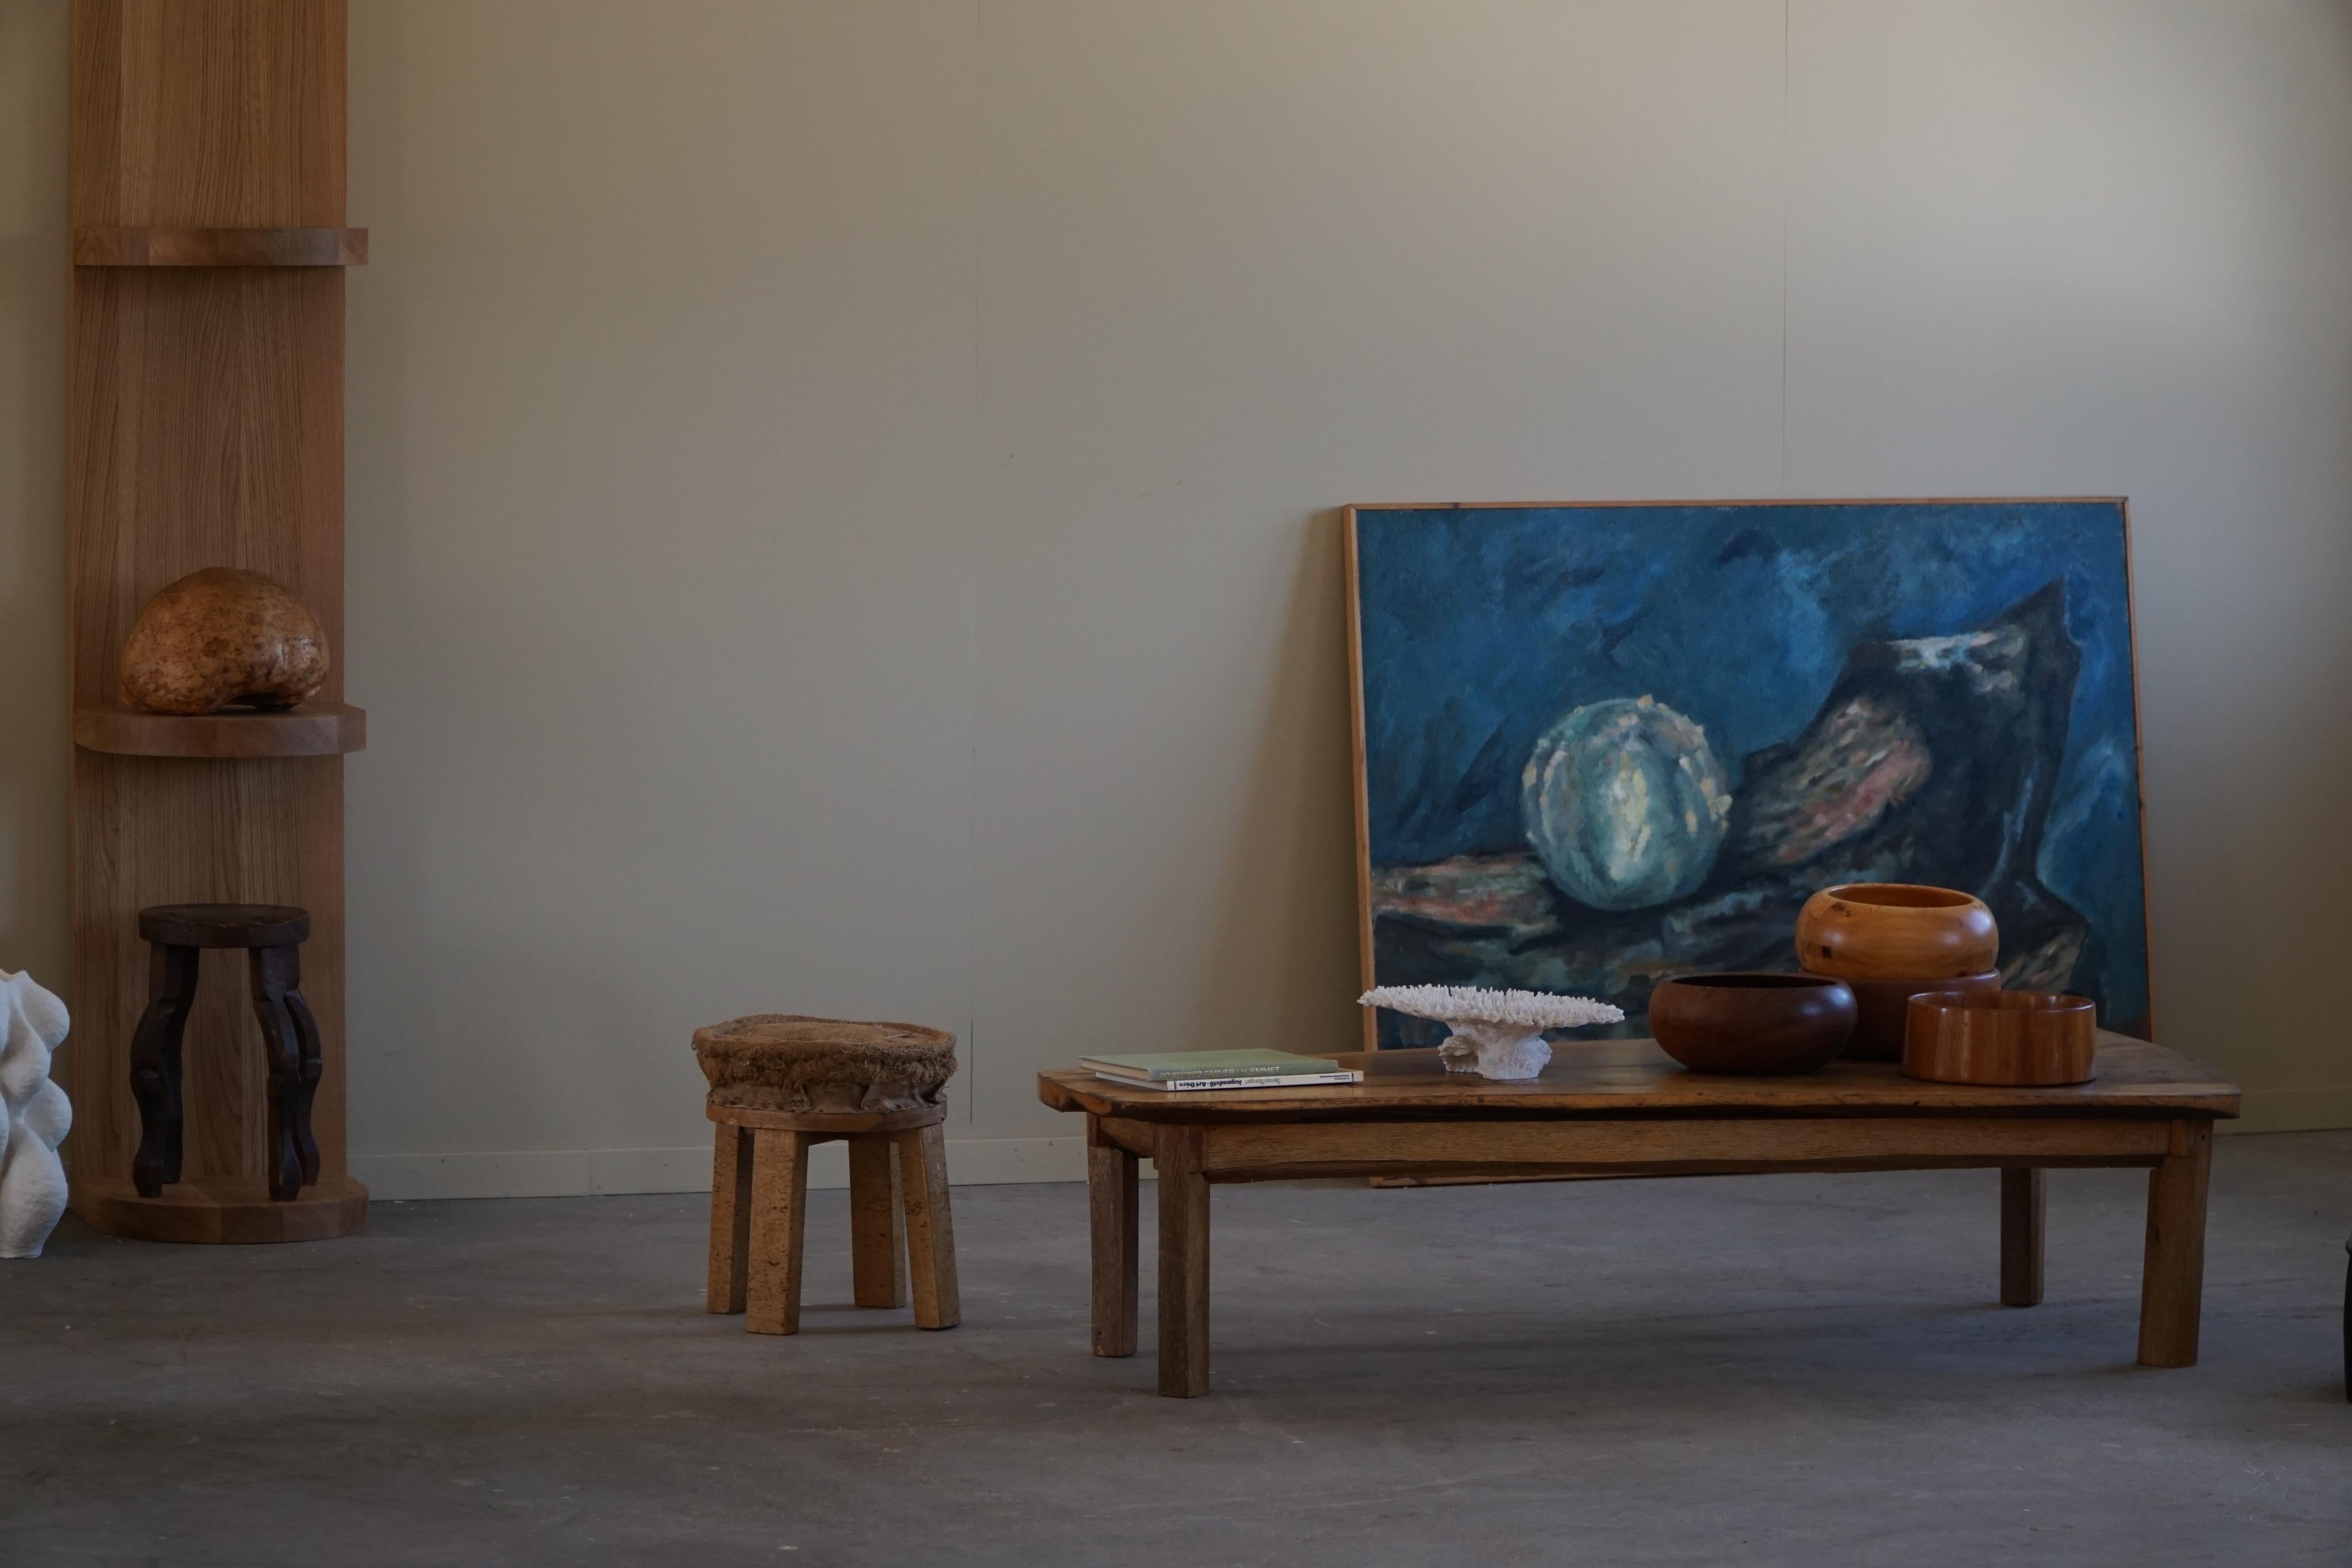 Merveilleuse table basse scandinave de forme organique en bois massif. Cette pièce vintage est en bon état avec quelques traces d'usure.

Un bel objet brutaliste de style wabi sabi avec une belle patine. Décoratif et bien adapté à l'intérieur